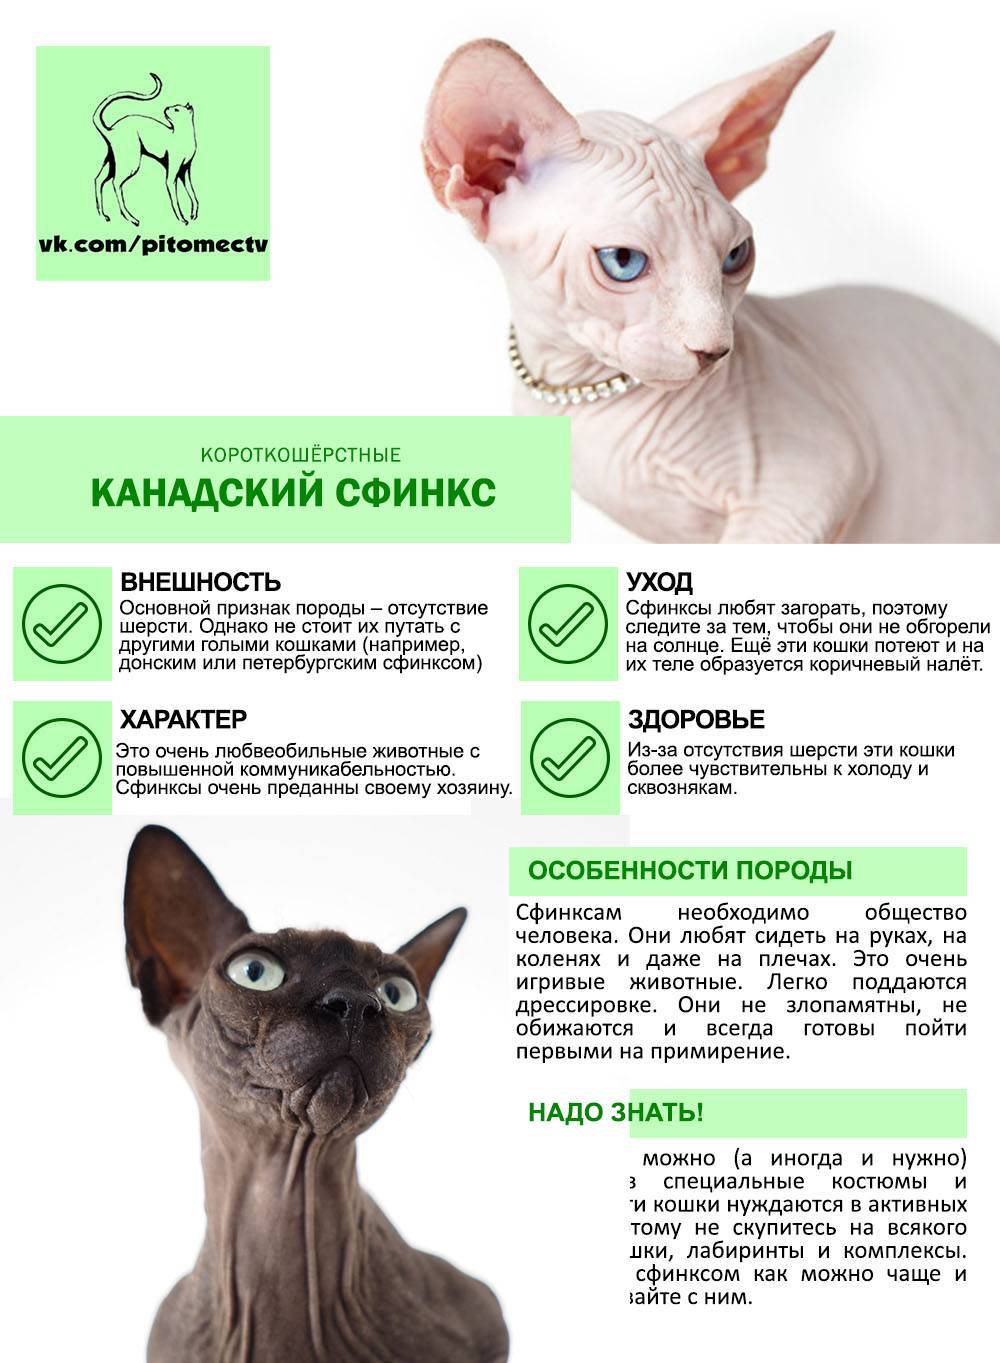 Лысые кошки — канадский и донской сфинкс: описание породы, отличия, окрасы, уход. чем кормить лысых кошек сфинксов, как содержать: рекомендации